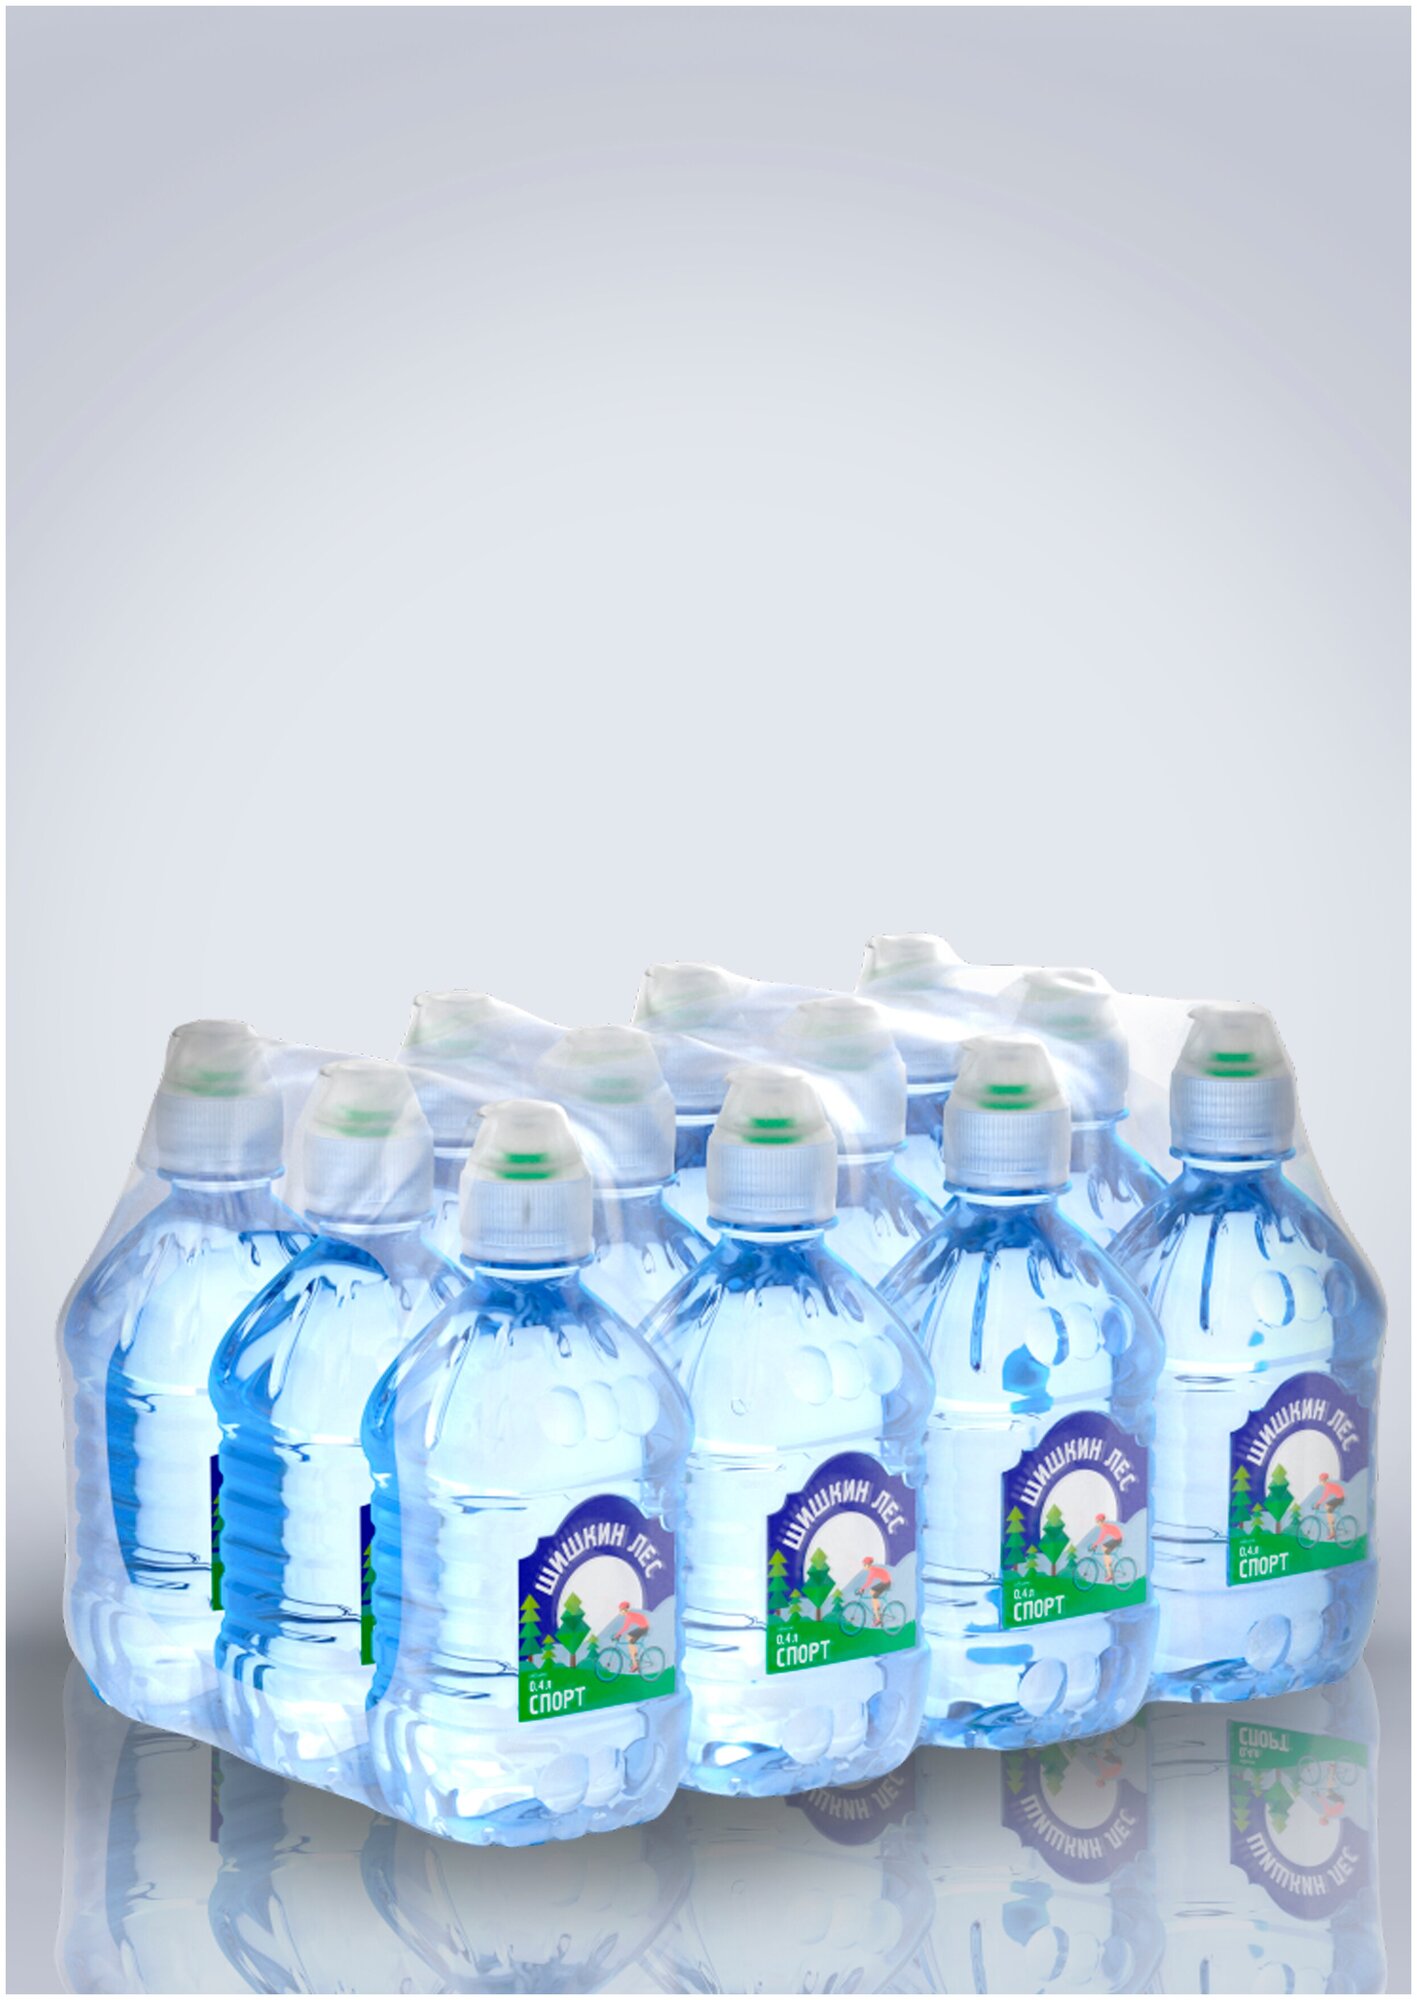 Шишкин ЛЕС, вода питьевая, негазированная, Шишкин лес Спорт, упаковка 12 шт по 0,4 л - фотография № 6